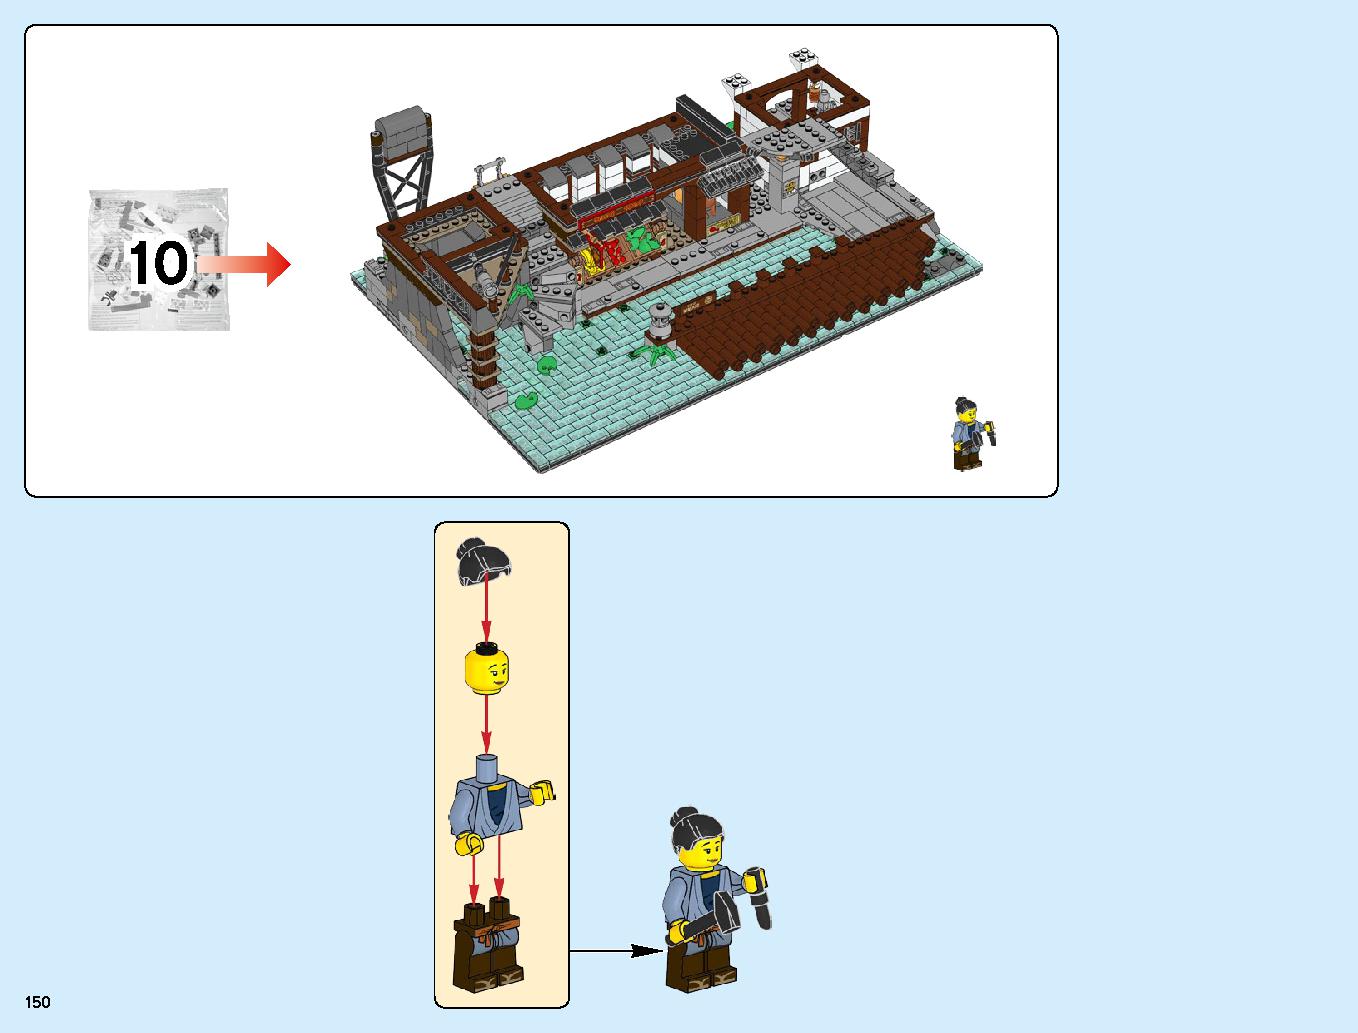 ニンジャゴーシティ・ポートパーク 70657 レゴの商品情報 レゴの説明書・組立方法 150 page